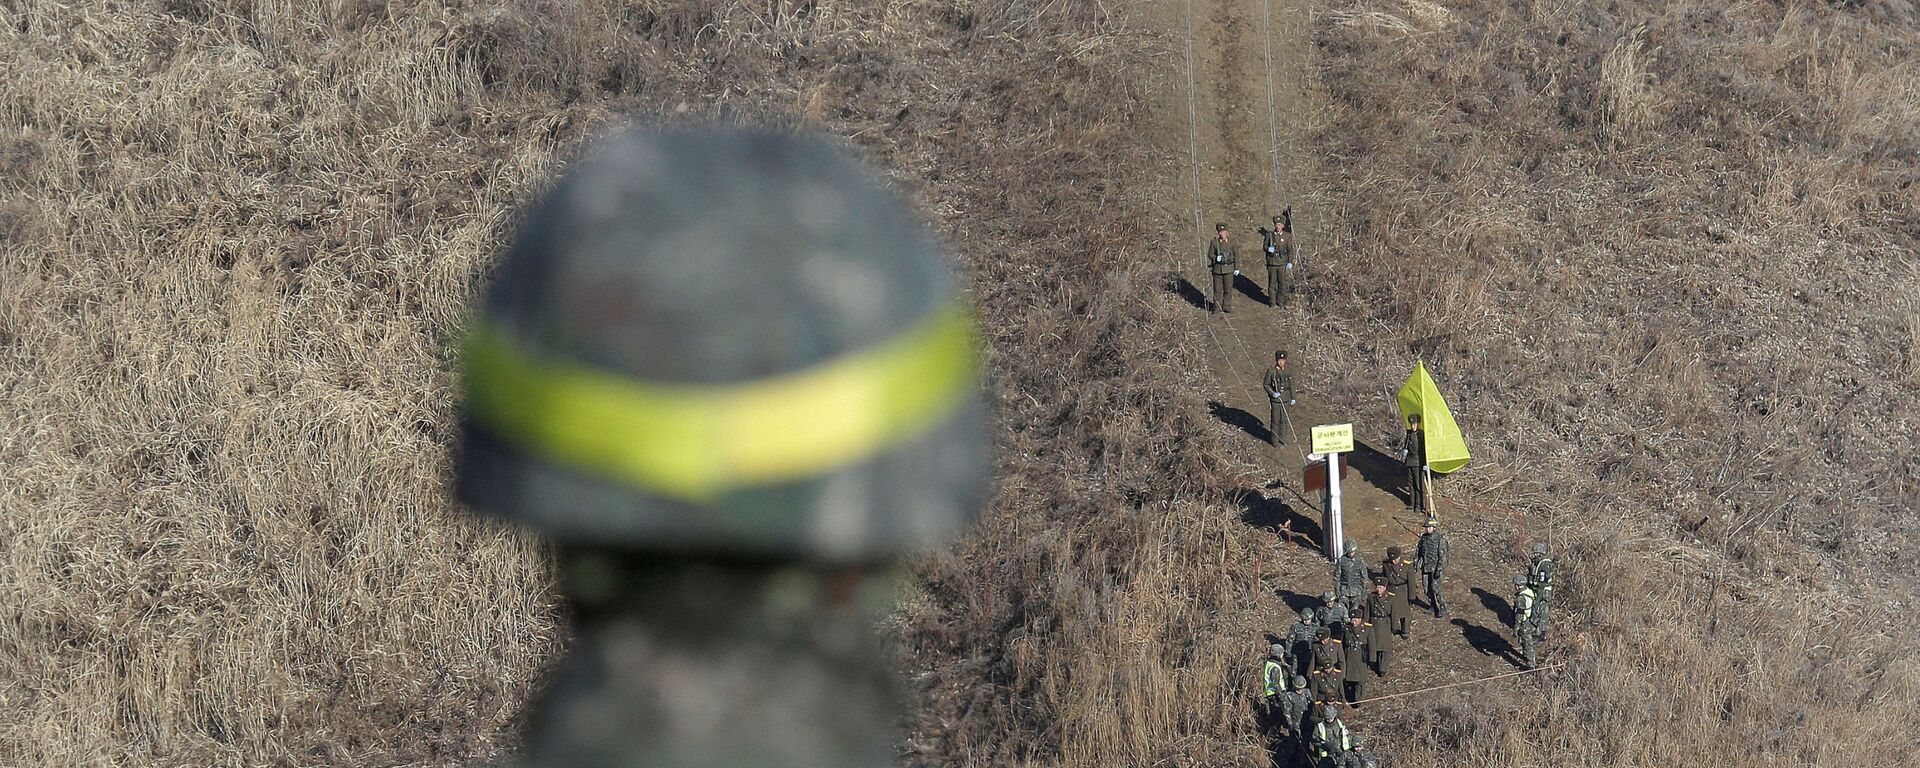 الحدود بين كوريا الجنوبية و كوريا الشمالية - الجنود - الجيش الكوري الجنوبي والشمالي، 12 ديسمبر/ كانون الأول 2018 - سبوتنيك عربي, 1920, 05.03.2020